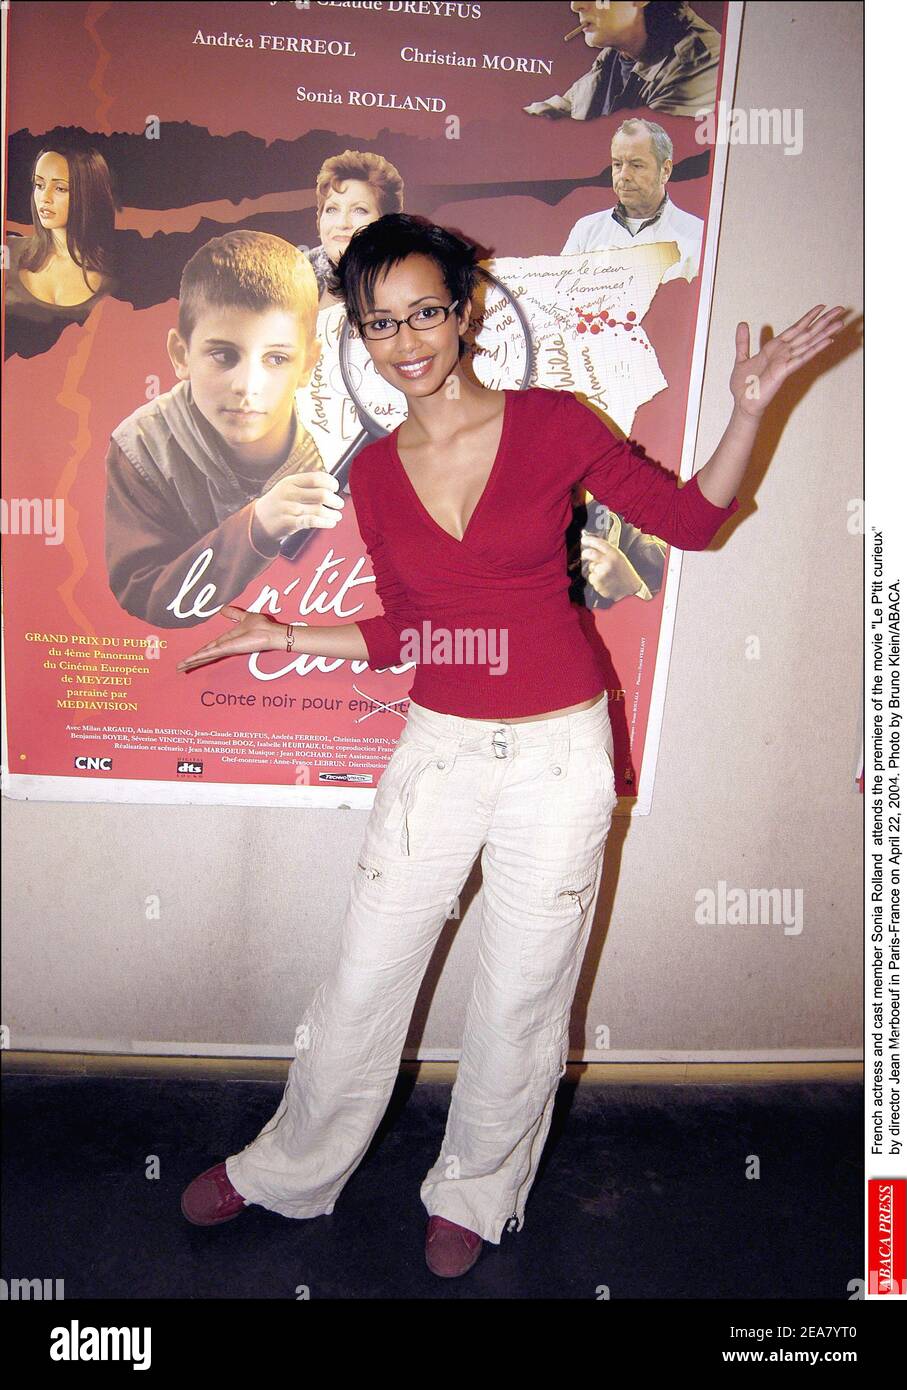 Sonia Rolland, actriz y miembro del reparto francés, asiste al estreno de la película le P'tit curieux del director Jean Marboeuf en París-Francia el 22 de abril de 2004. Foto de Bruno Klein/ABACA. Foto de stock